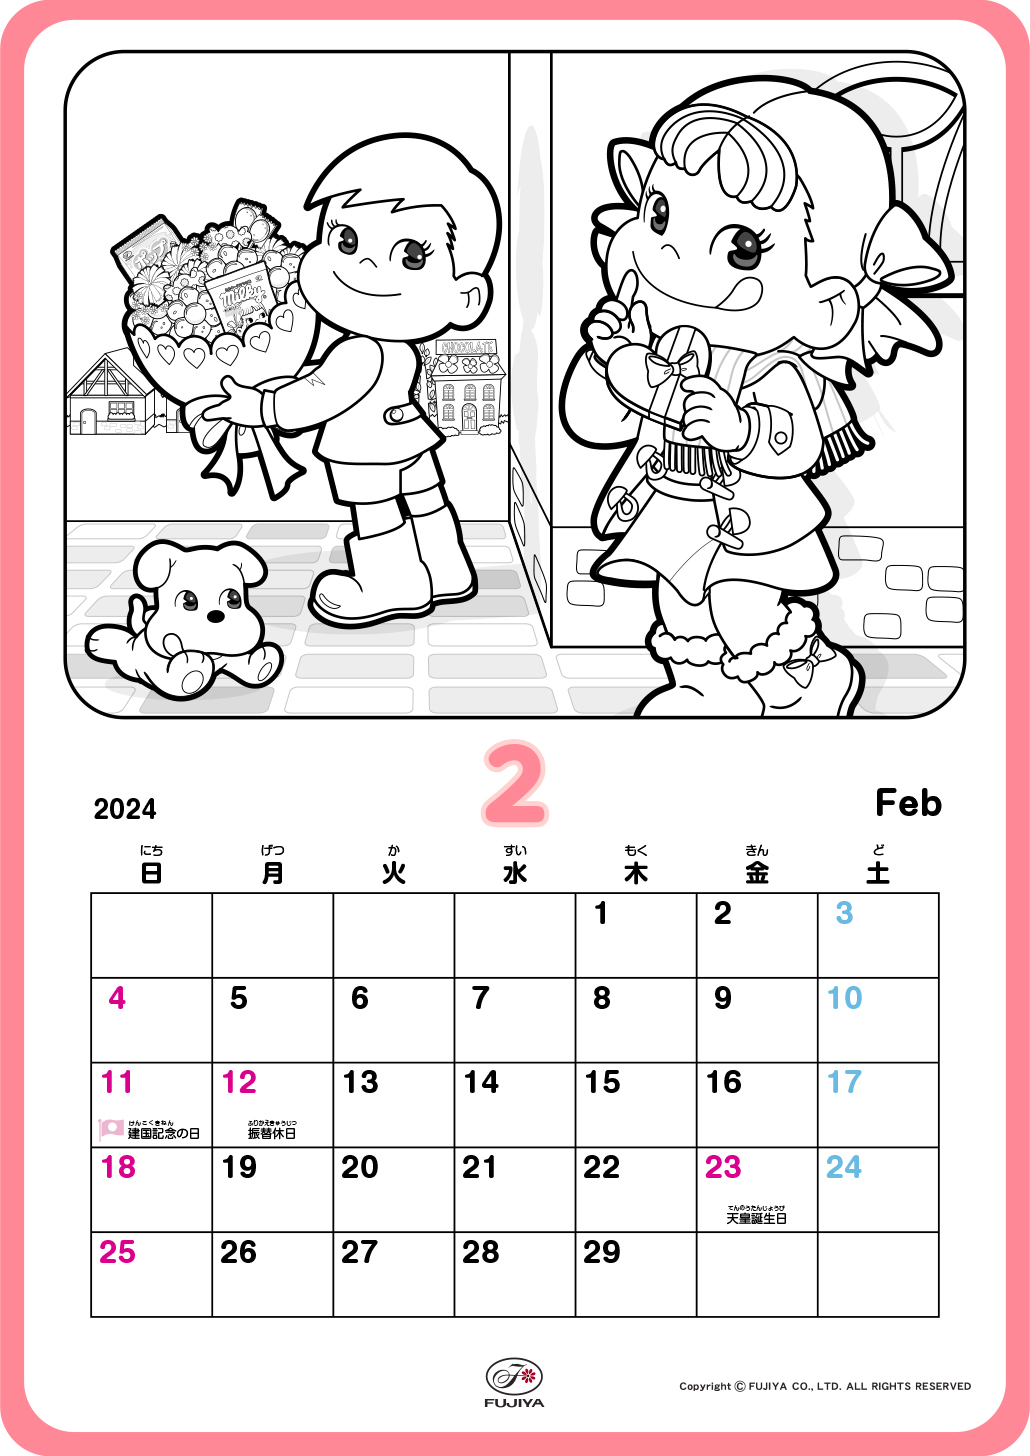 ペコちゃんとポコちゃんがバレンタインでプレゼント交換をしてるね♪ぬったあとは、カレンダーとして使ってね。